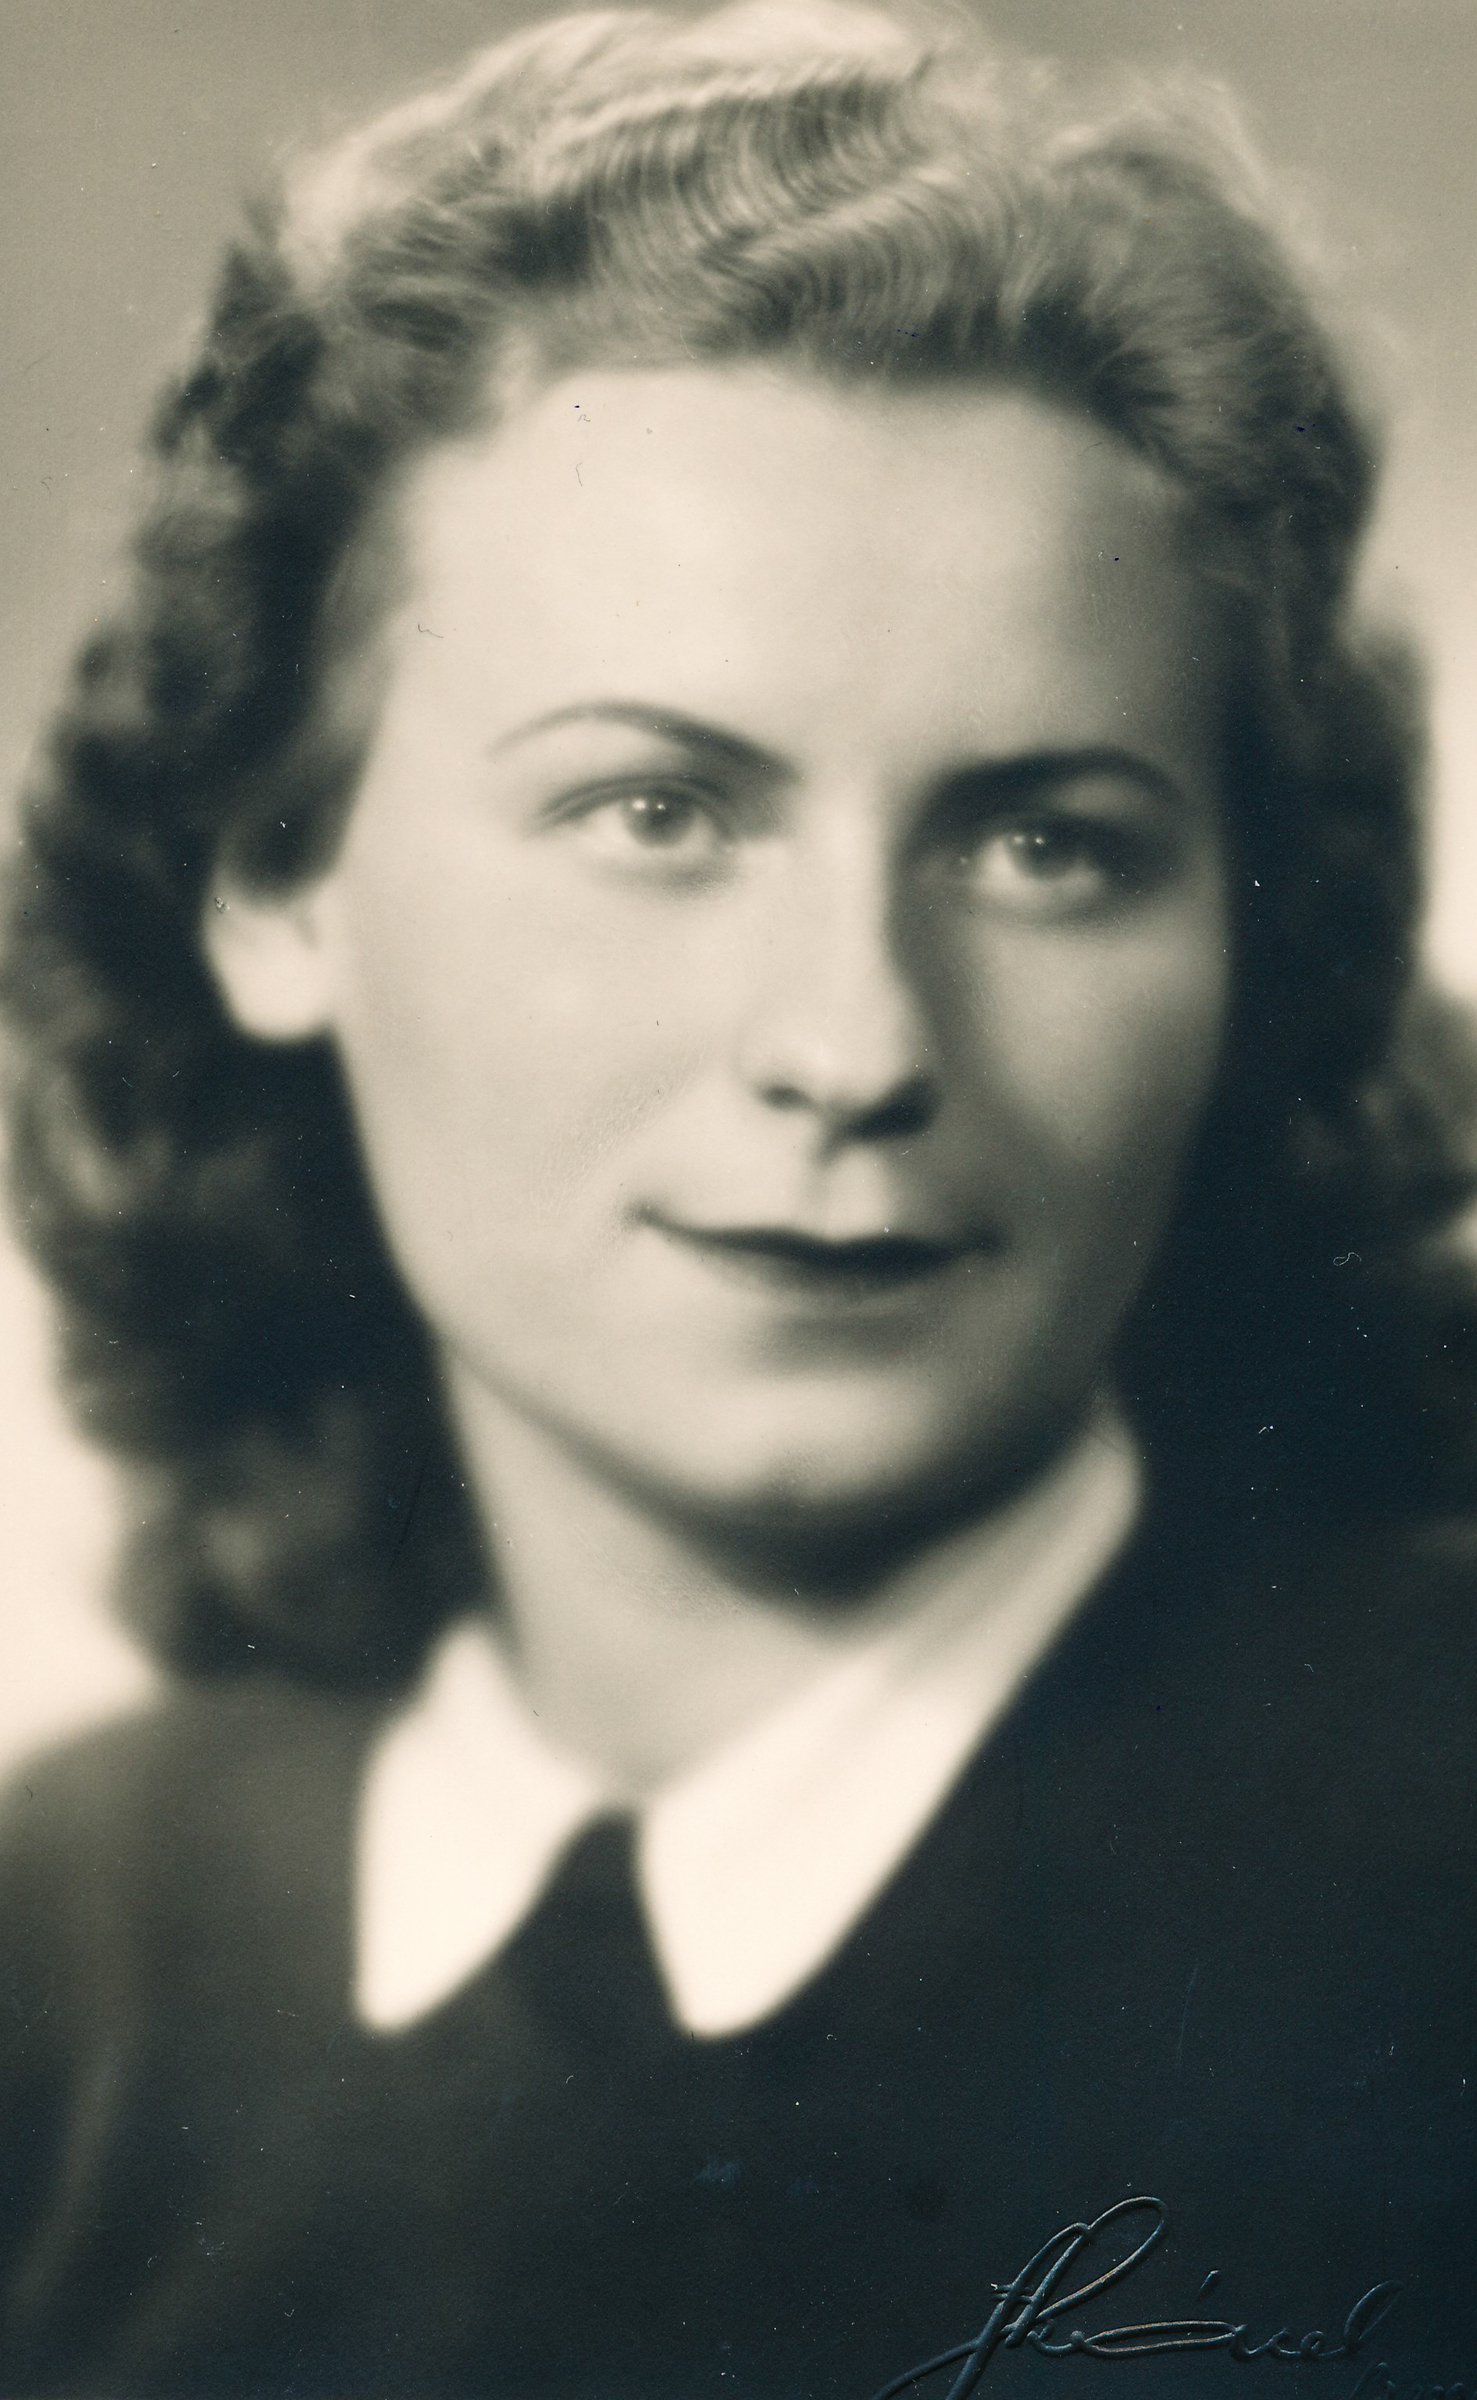 Jitka Pešová - Tobyášová, 1946